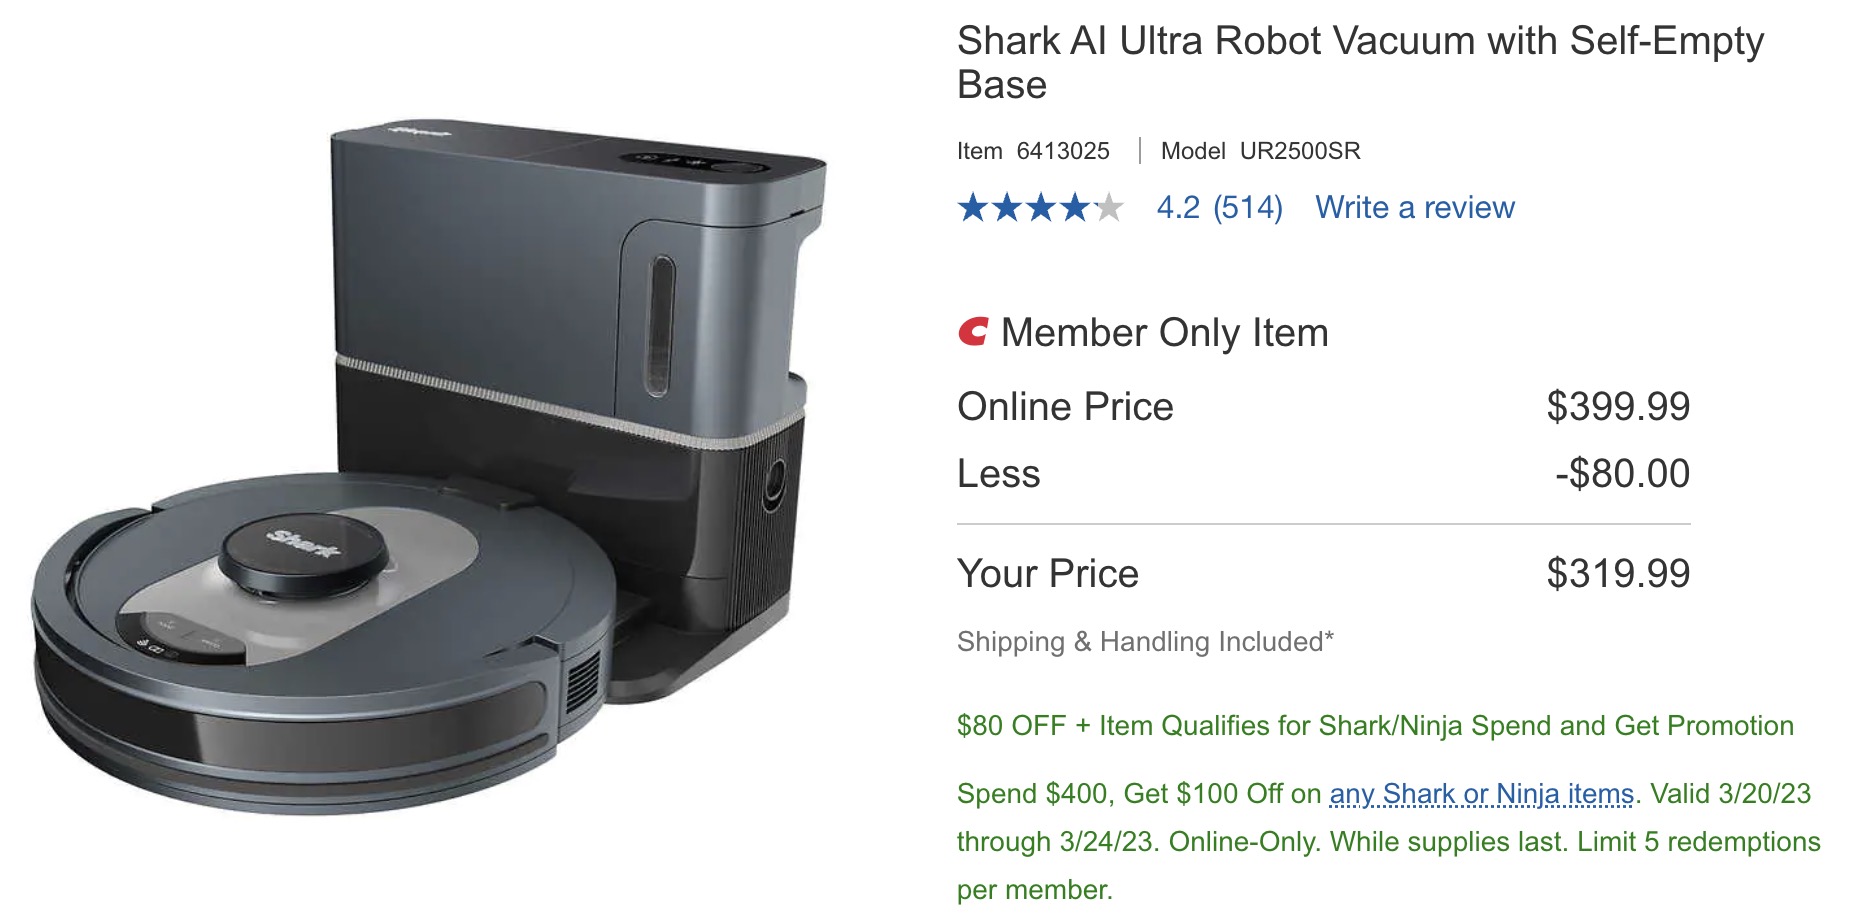 Shark UR2500SR AI Ultra Robot Vacuum + WANDVAC Cord-Free Handheld Vacuum = $319.98